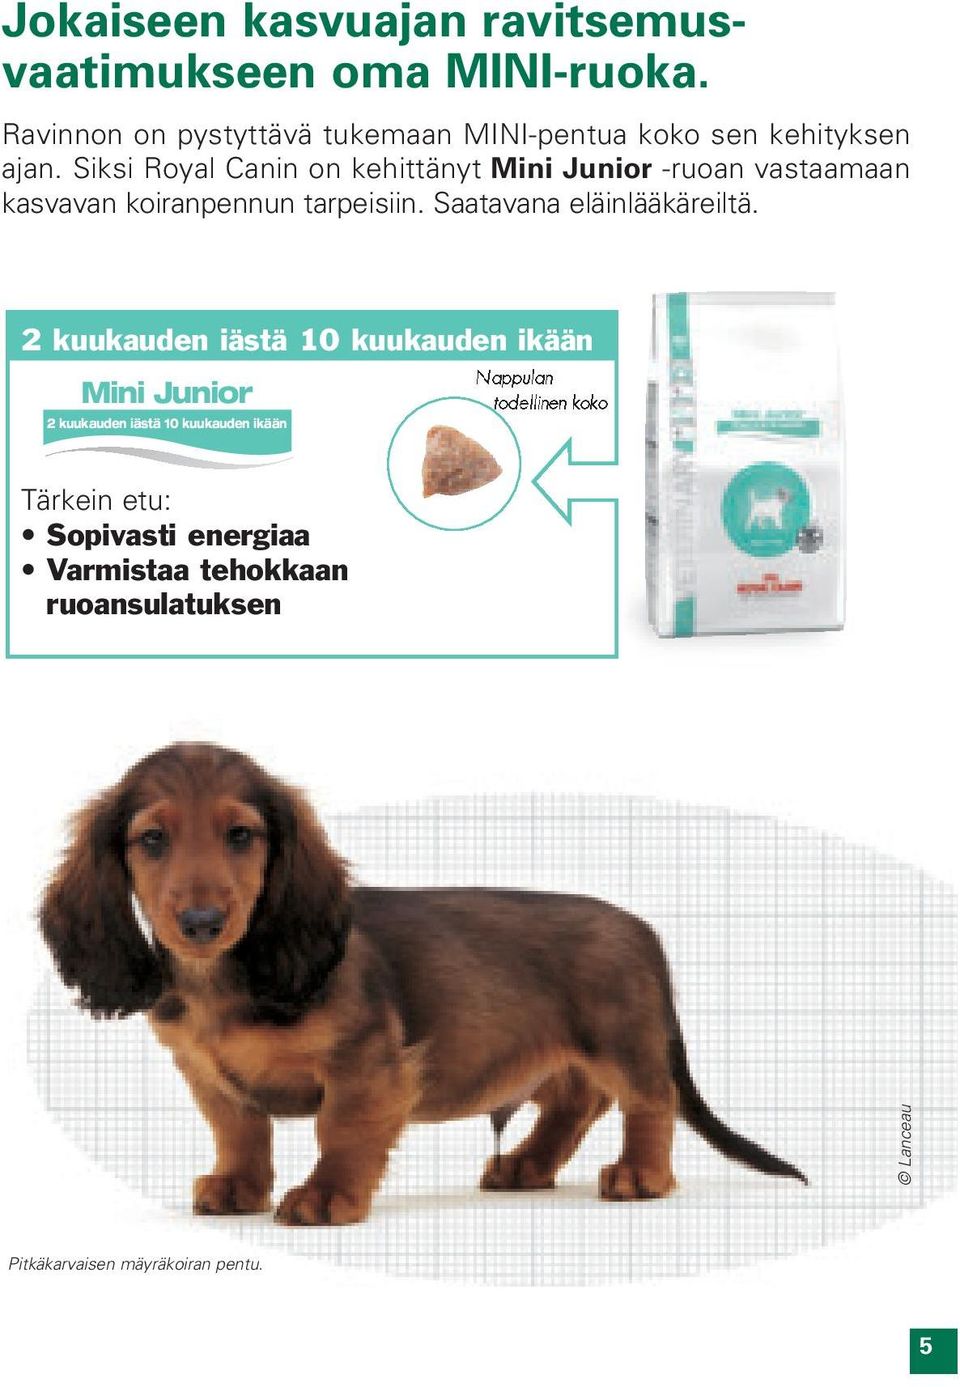 Siksi Royal Canin on kehittänyt Mini Junior -ruoan vastaamaan kasvavan koiranpennun tarpeisiin.